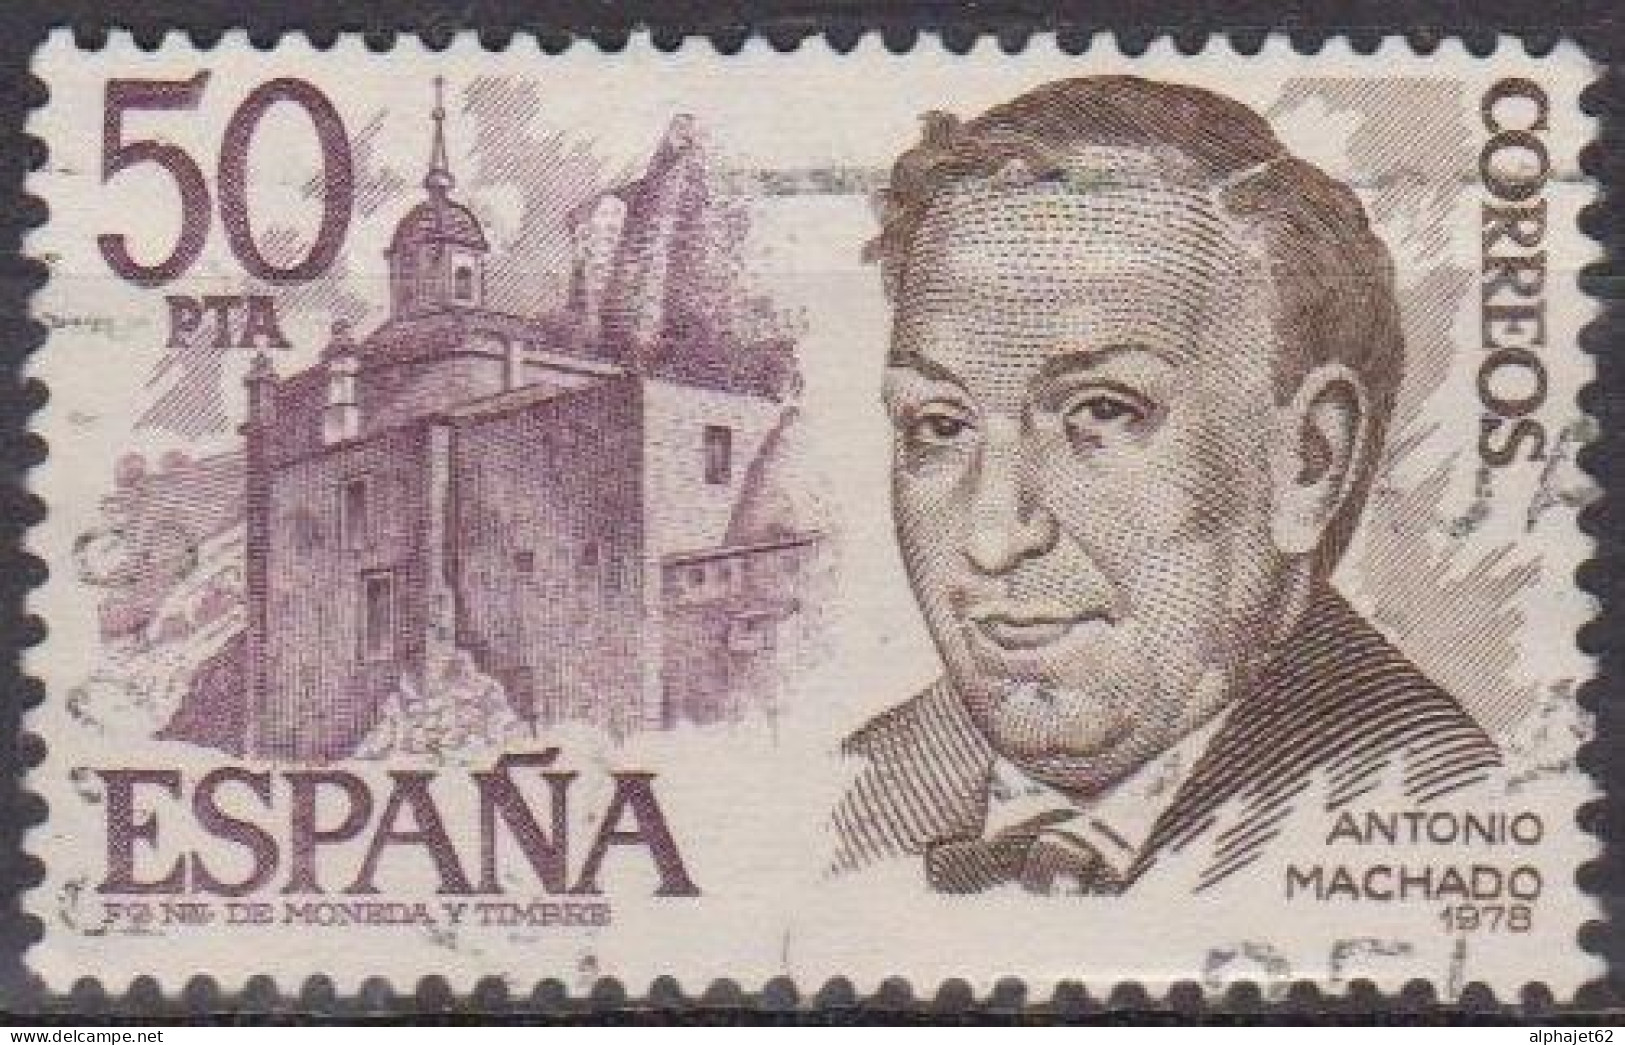 Personnalités - ESPAGNE - Antonio Machado - N° 2104 - 1978 - Used Stamps